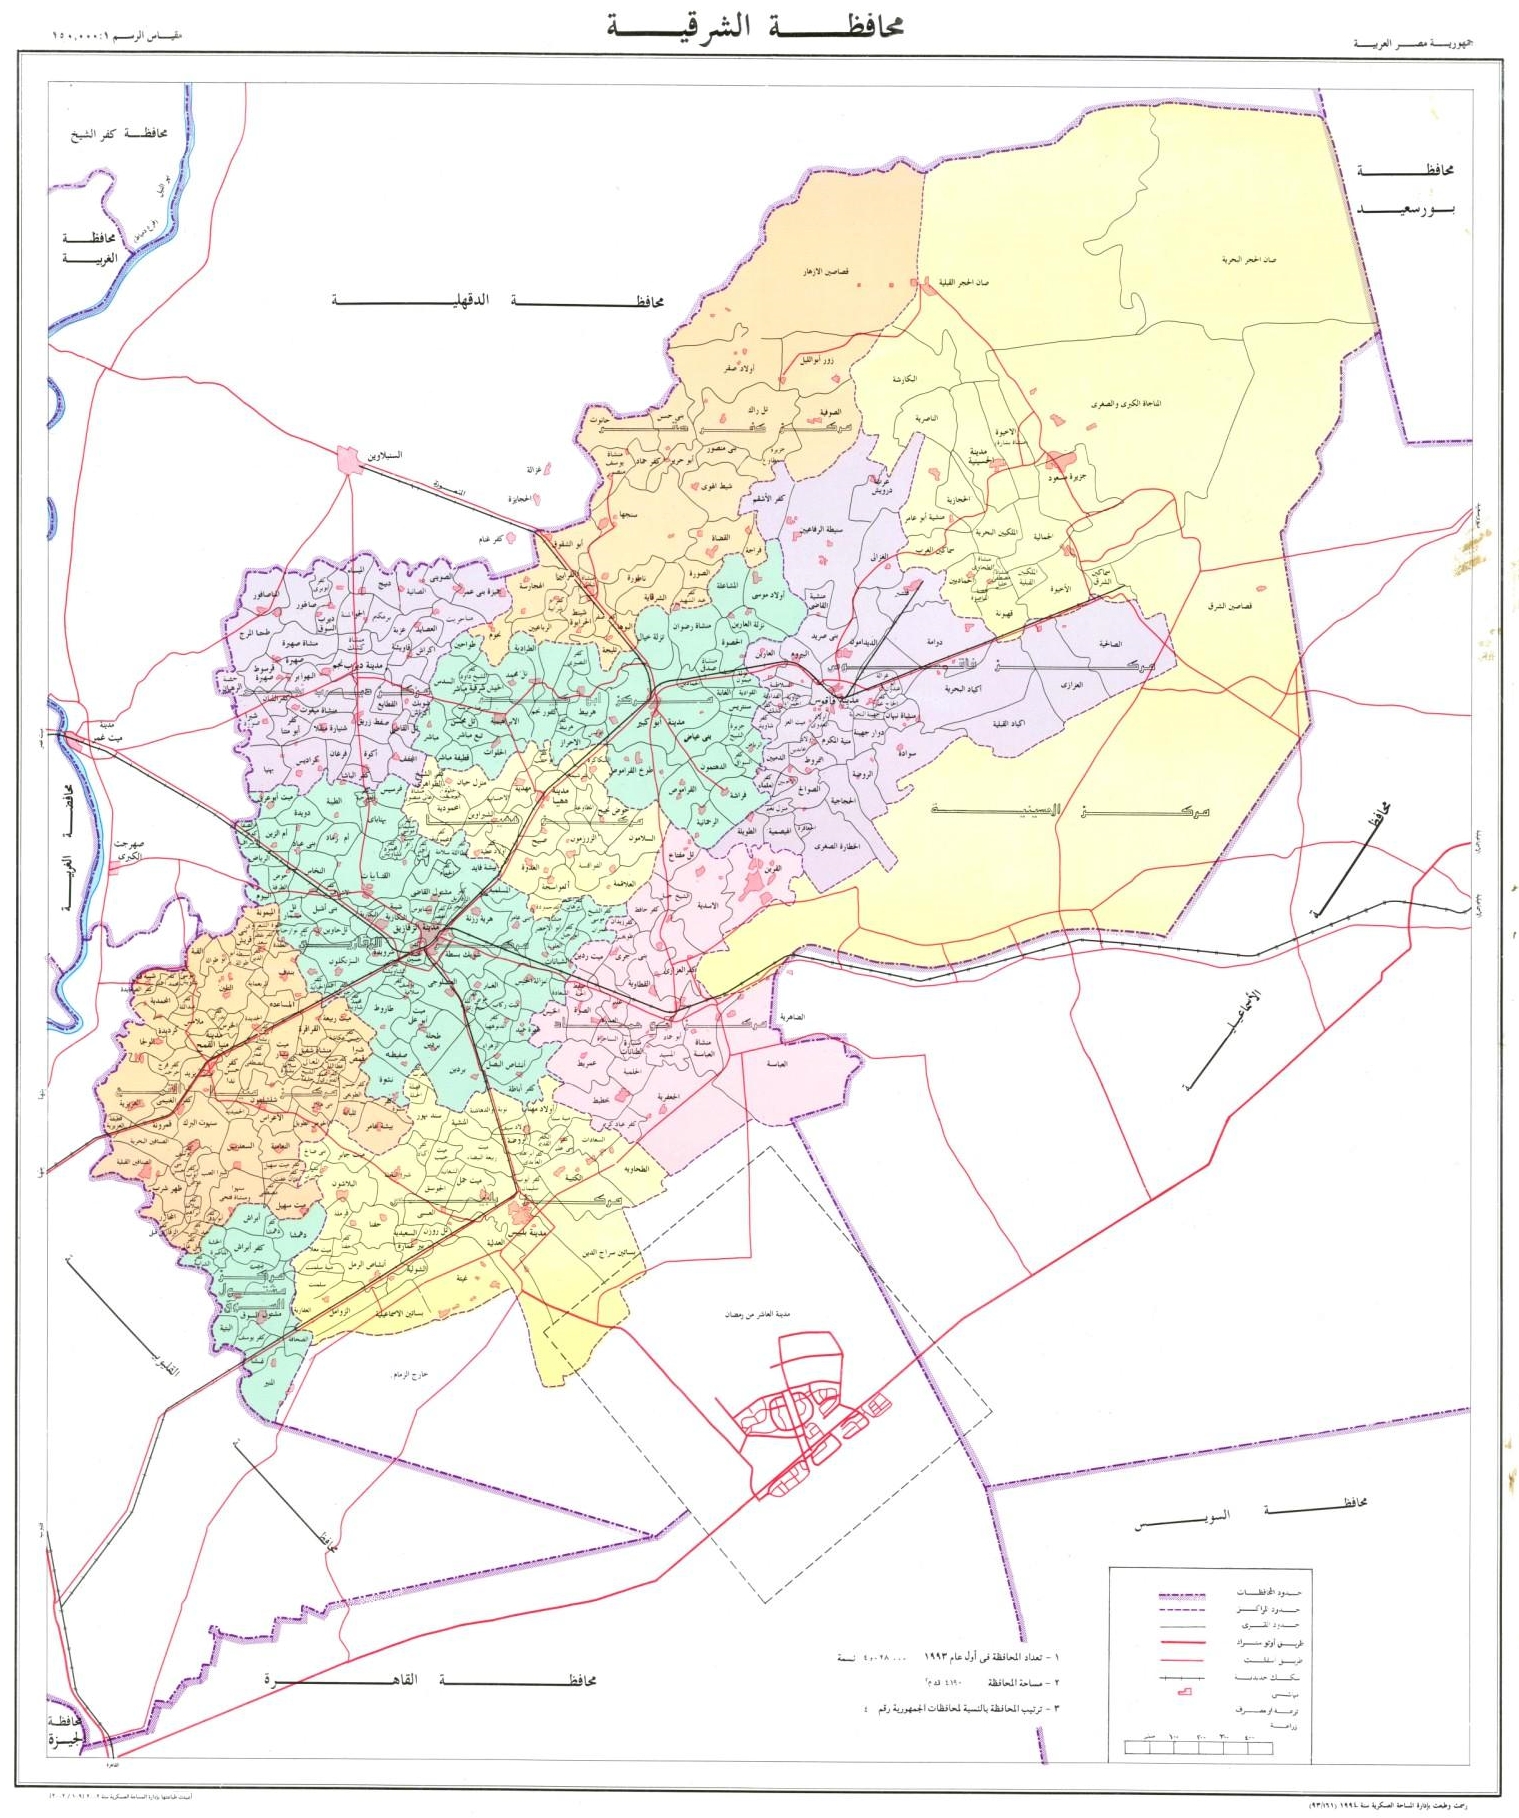 ملف:خريطة محافظة الشرقية.jpg - ويكيبيديا